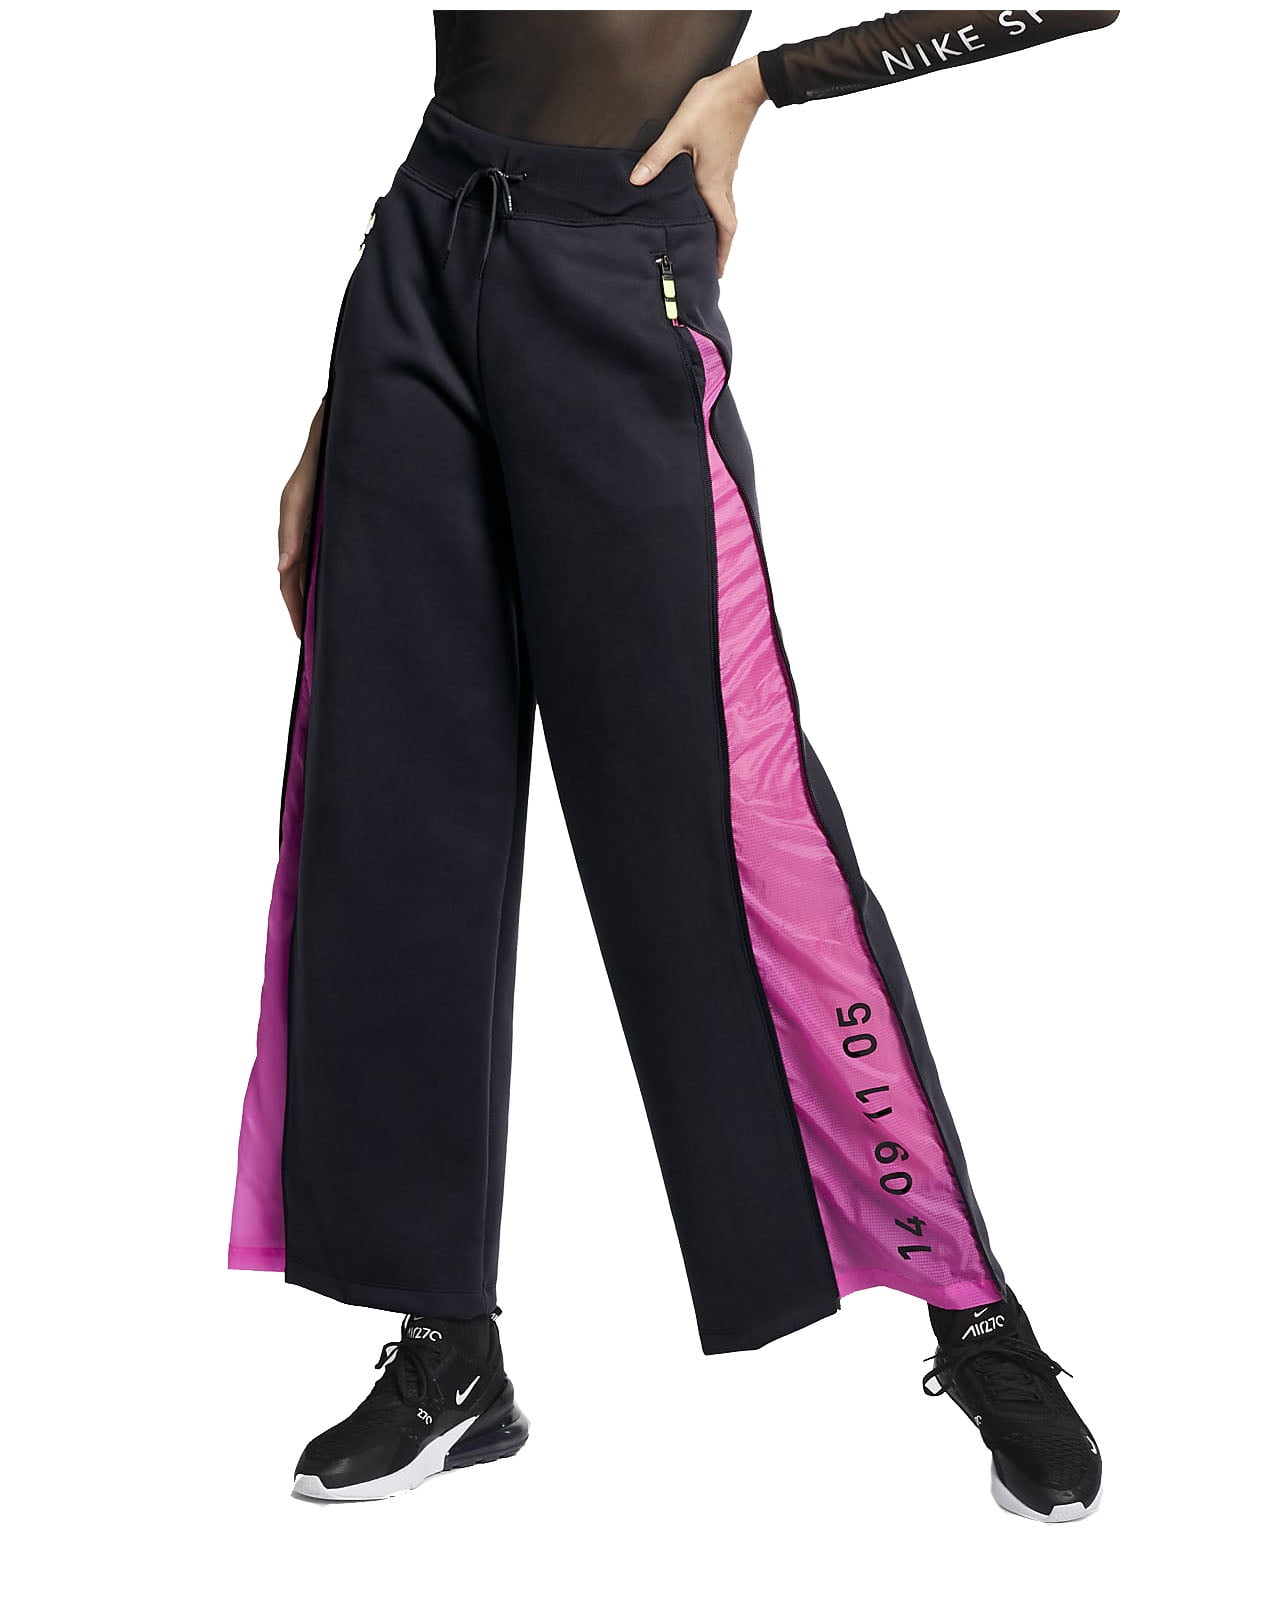 Nike Women\'s Tech Workout Sportwear Side Pink, (Black/Hyper Pack zip Fit X-Small) Loose Pants